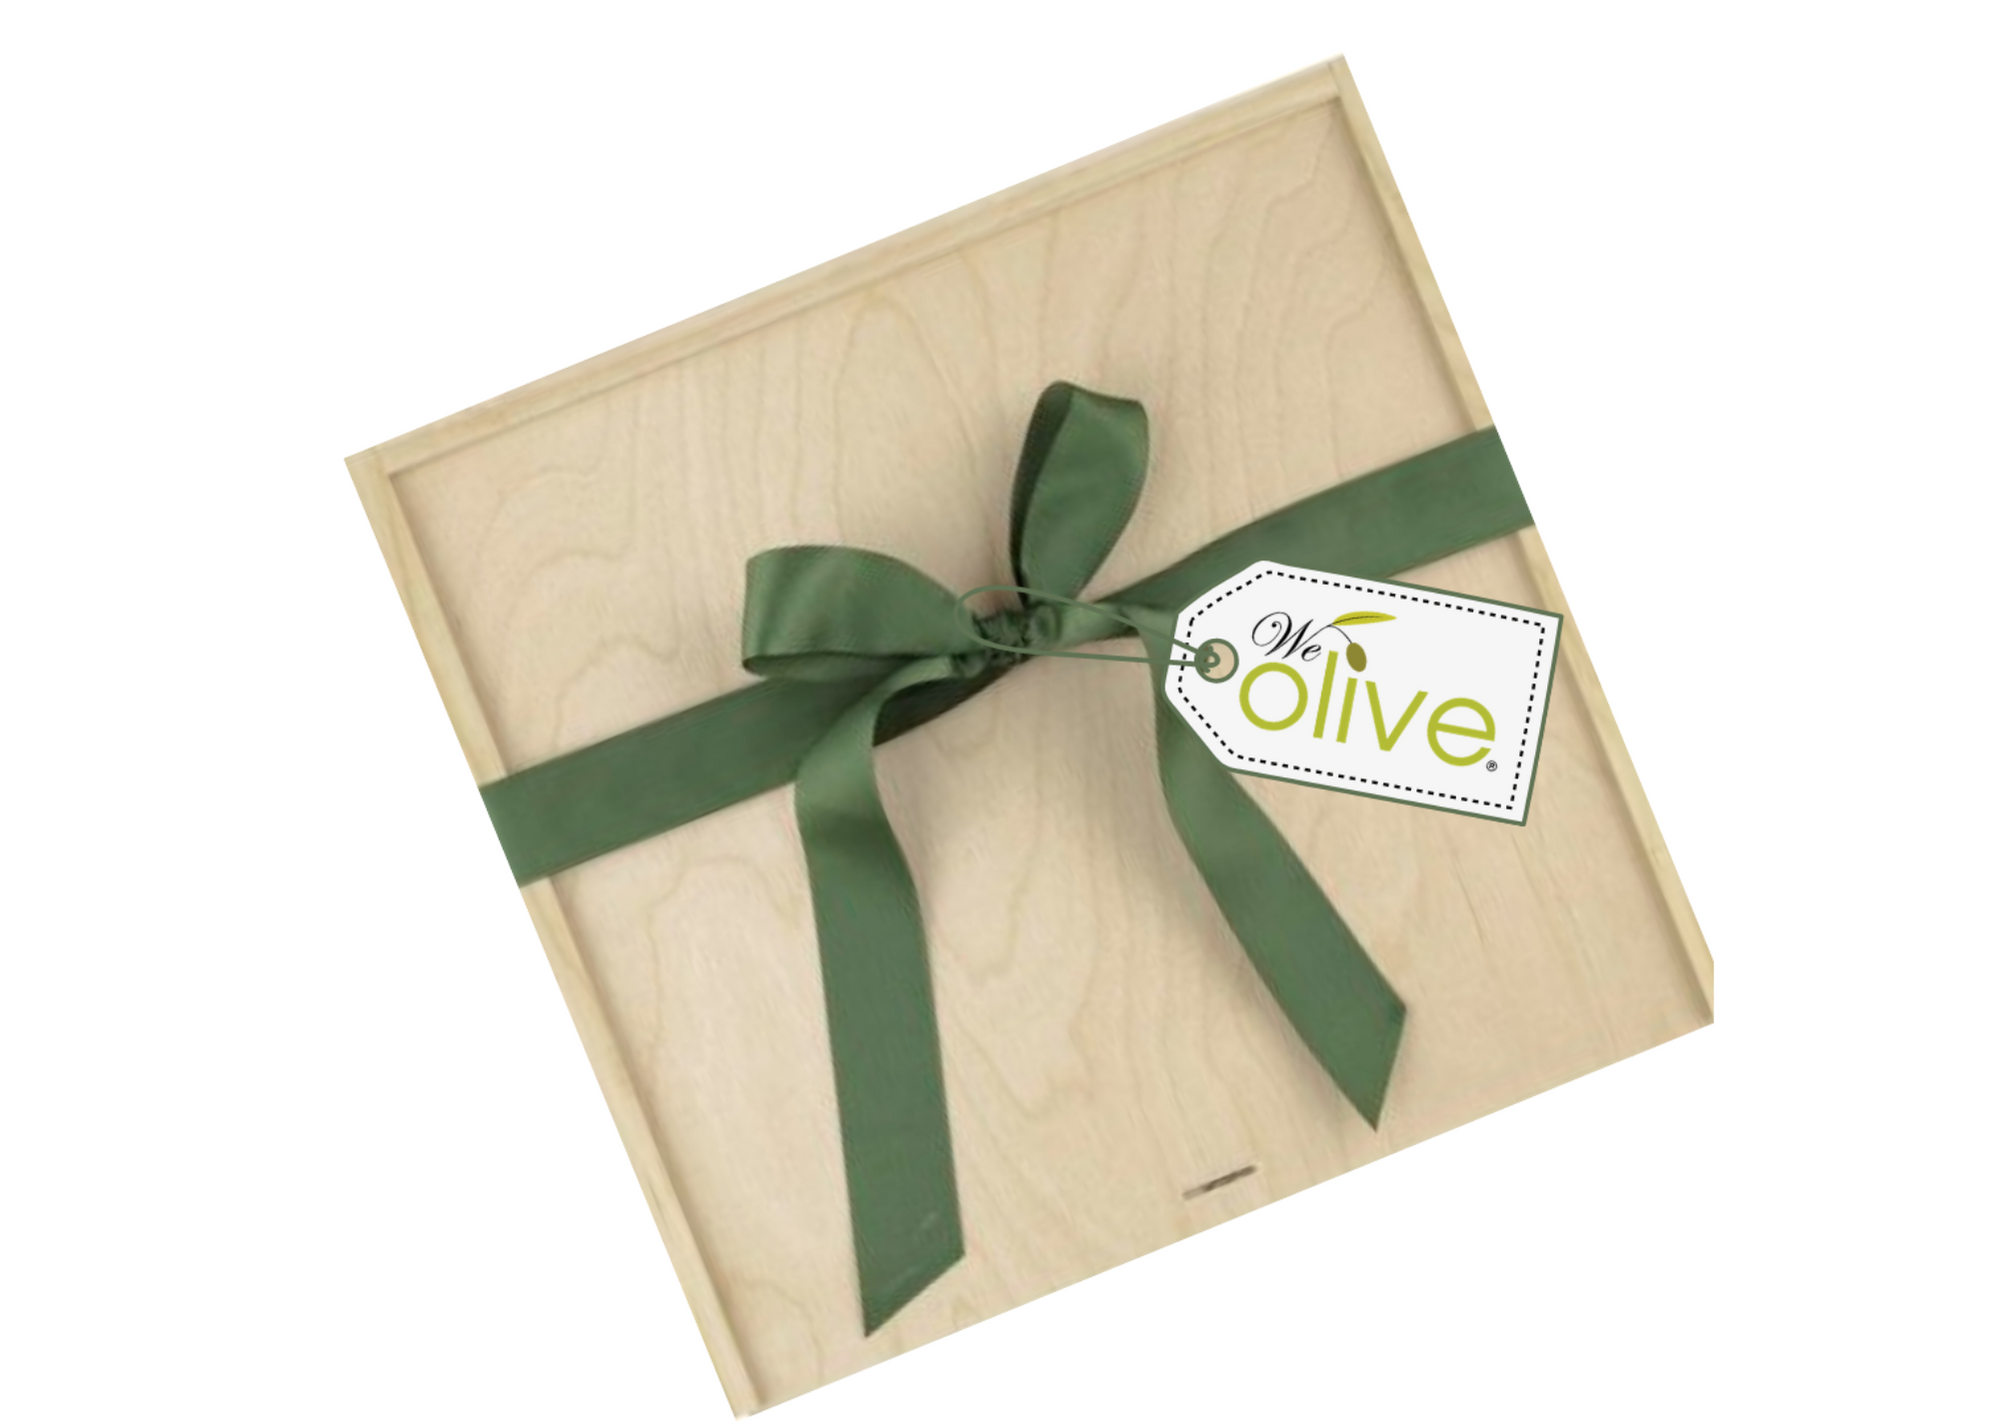 Olive oil gift basket